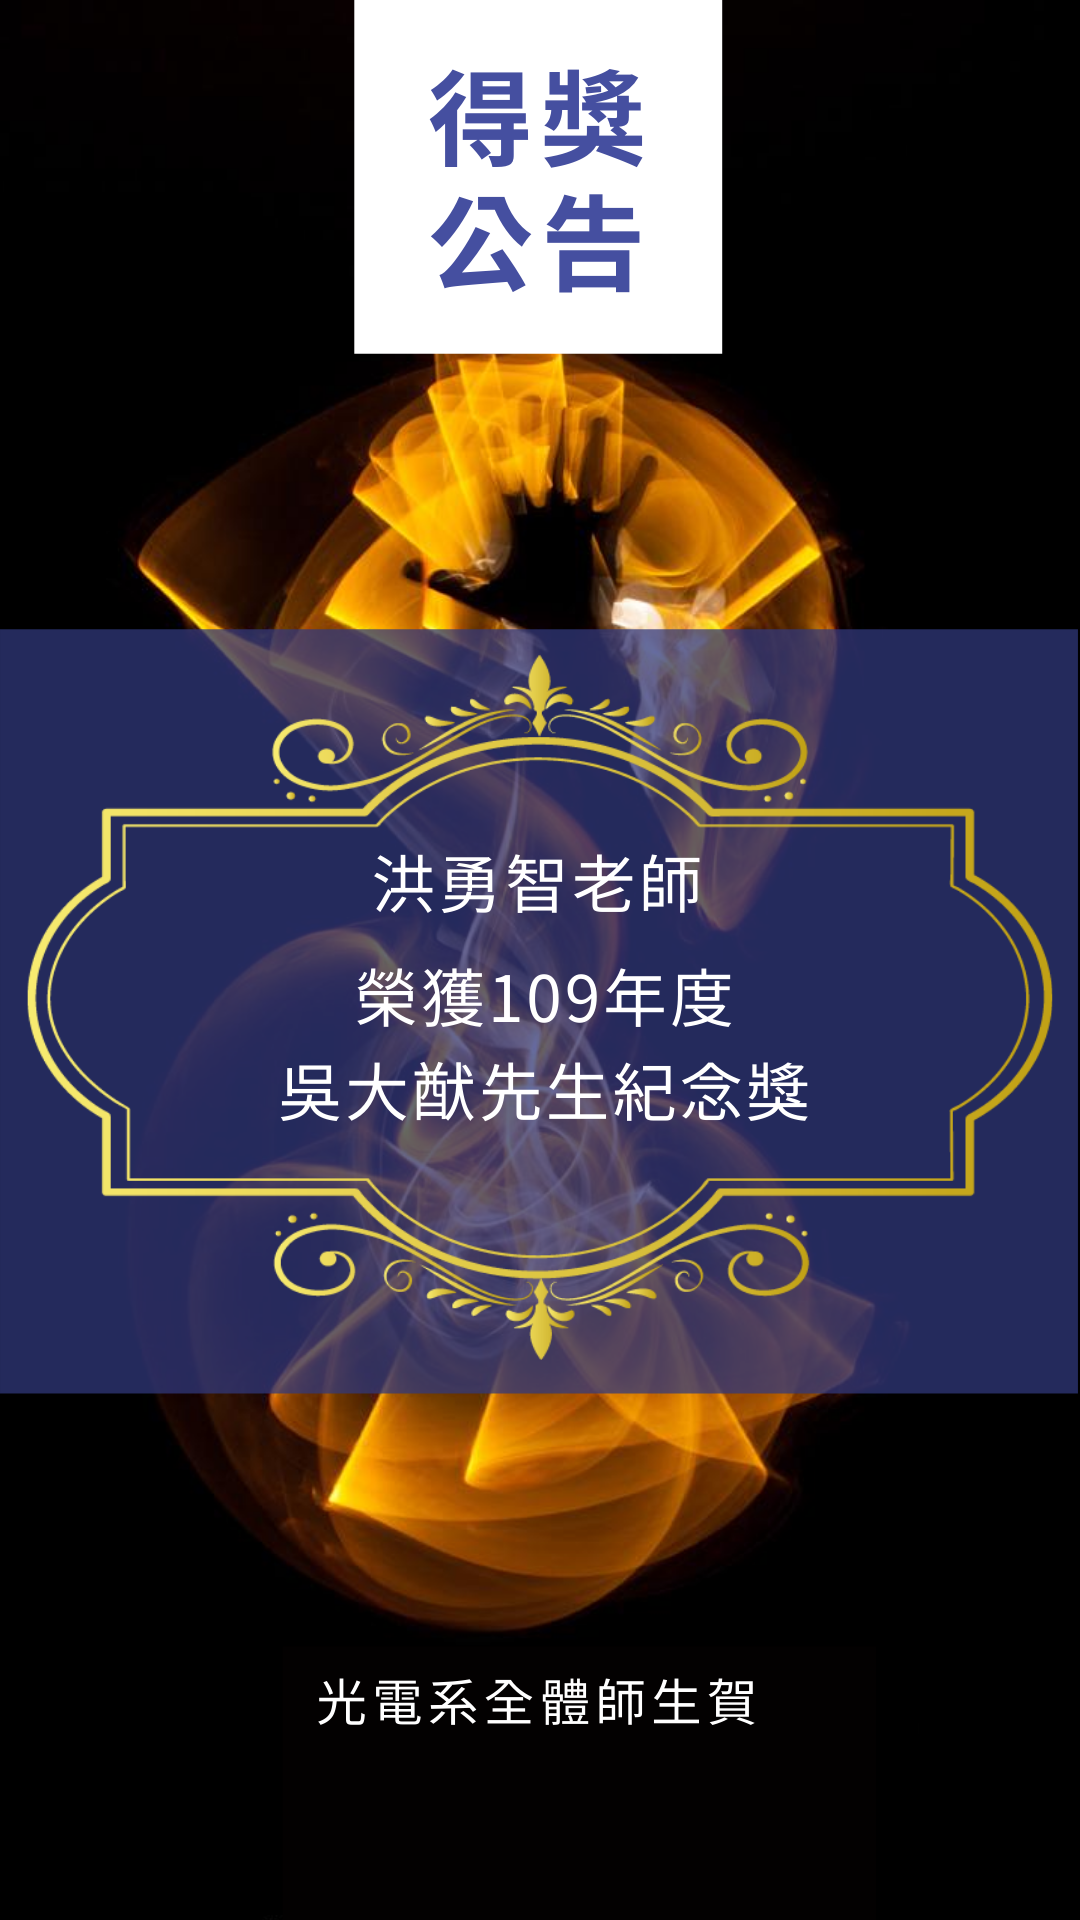 洪勇智老師榮獲109年度 吳大猷先生紀念獎